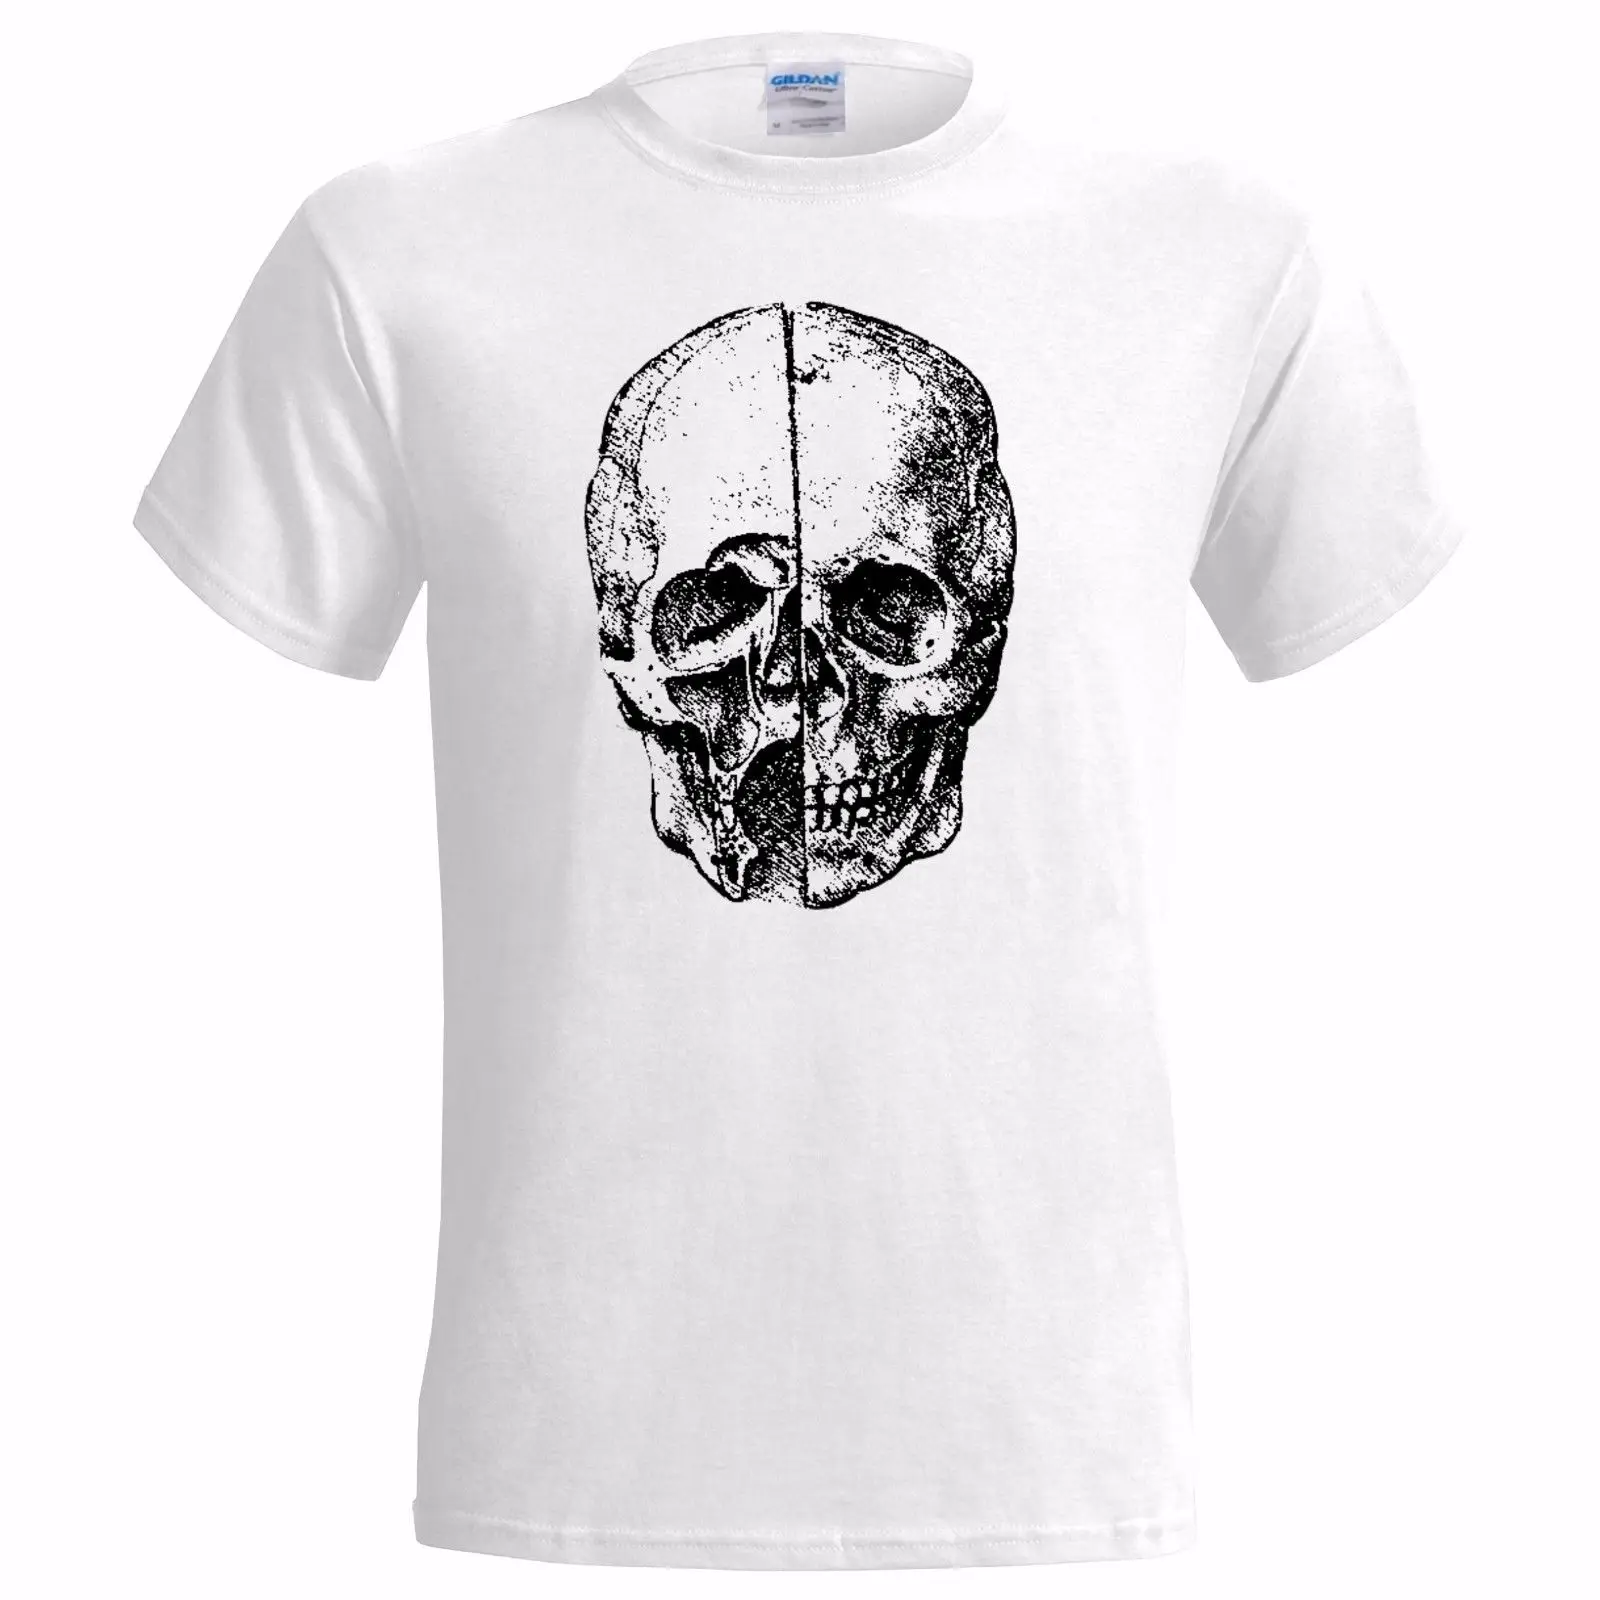 

Мужская футболка с рисунком черепа да Винчи из 100% хлопка, Мужская футболка с изображением Леонардо, художника, изобретателя, науки, анатомии